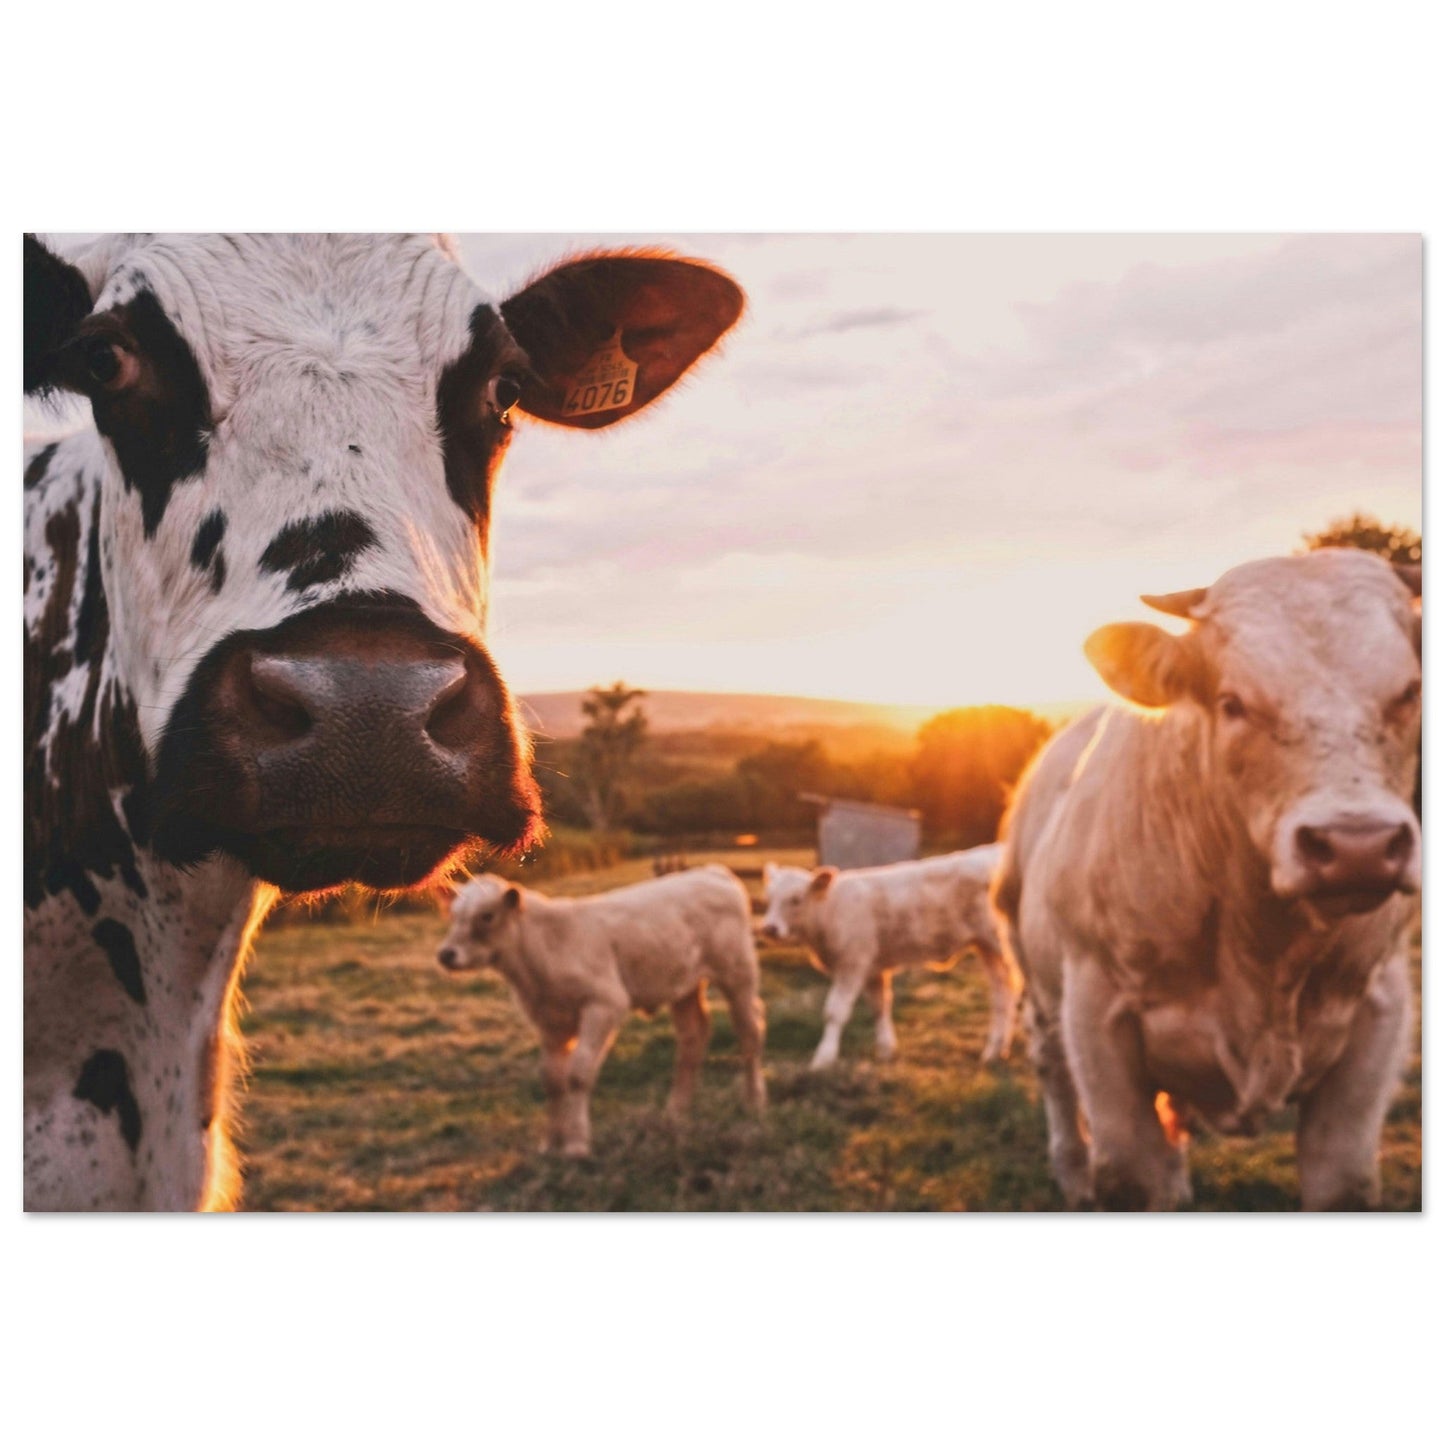 Vente Photo de vaches en Savoie #3 - Tableau photo paysage